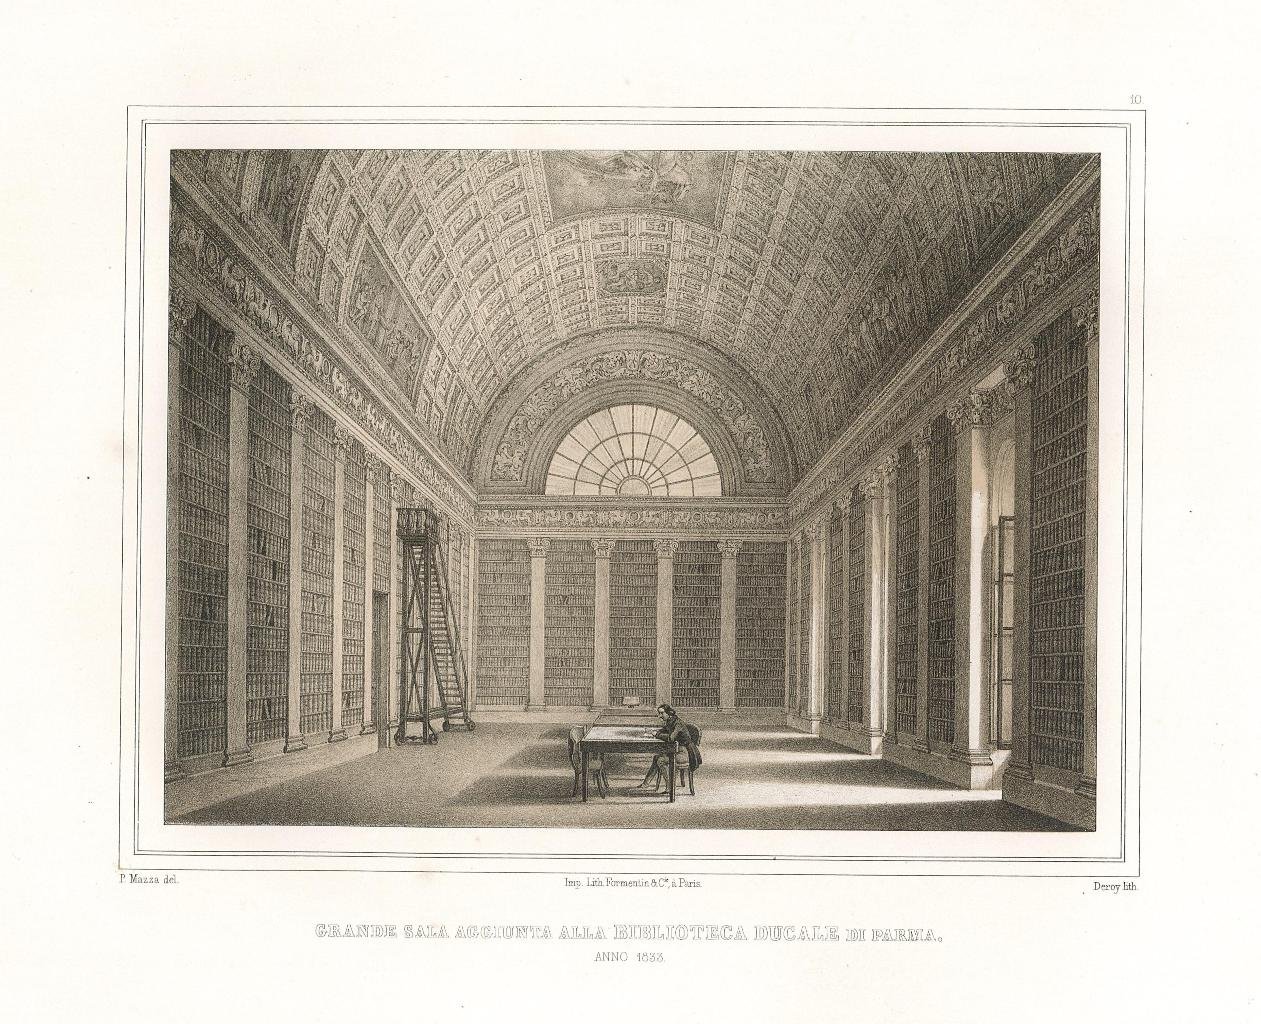 Grande sala aggiunta alla Biblioteca Ducale di Parma